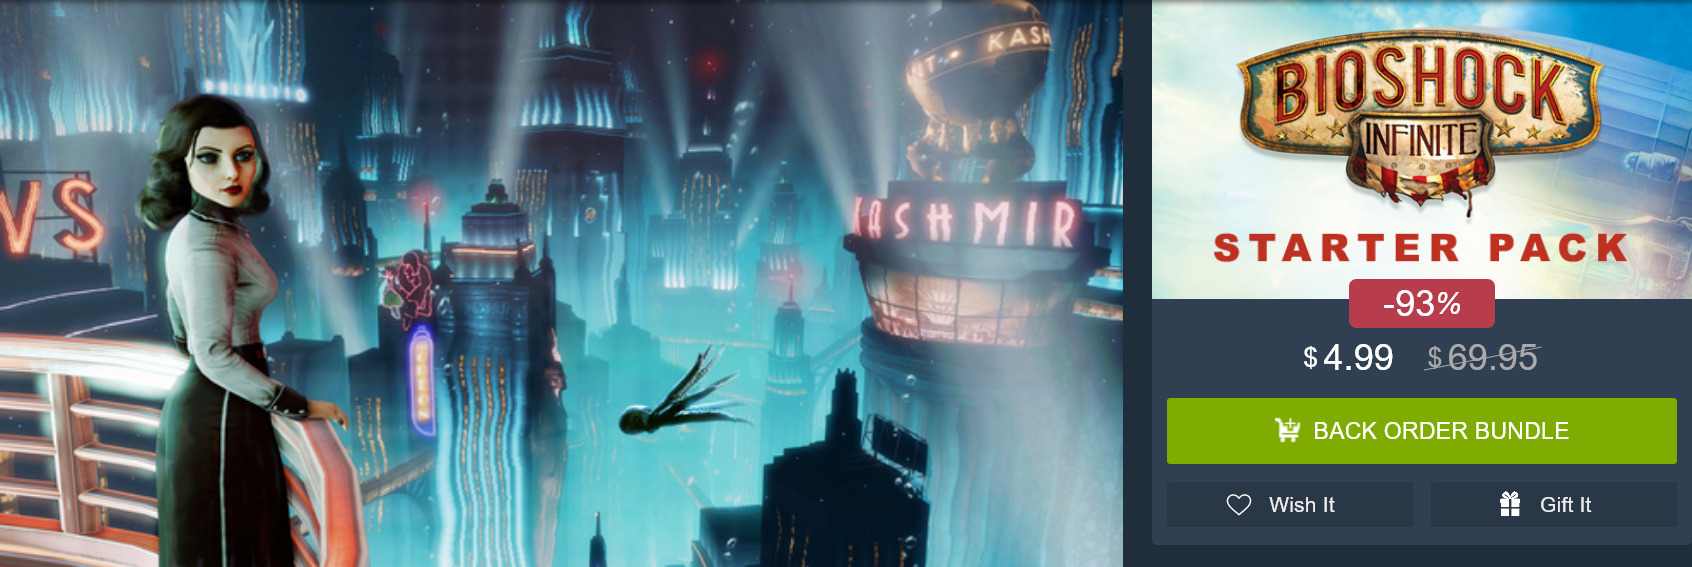 Screenshot_2019-12-23 BioShock Infinite Starter Pack.jpg